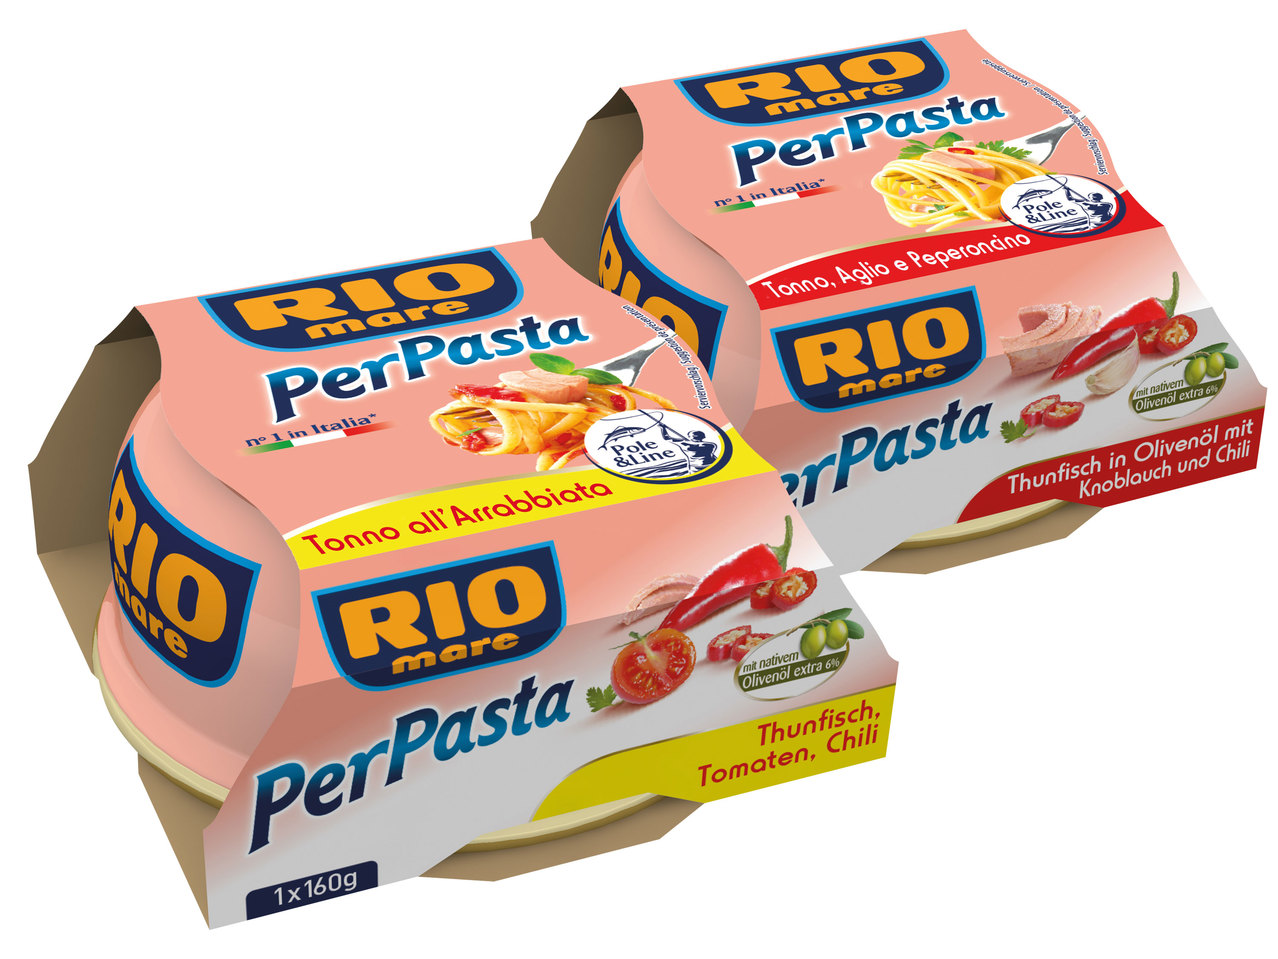 RIO MARE Per Pasta